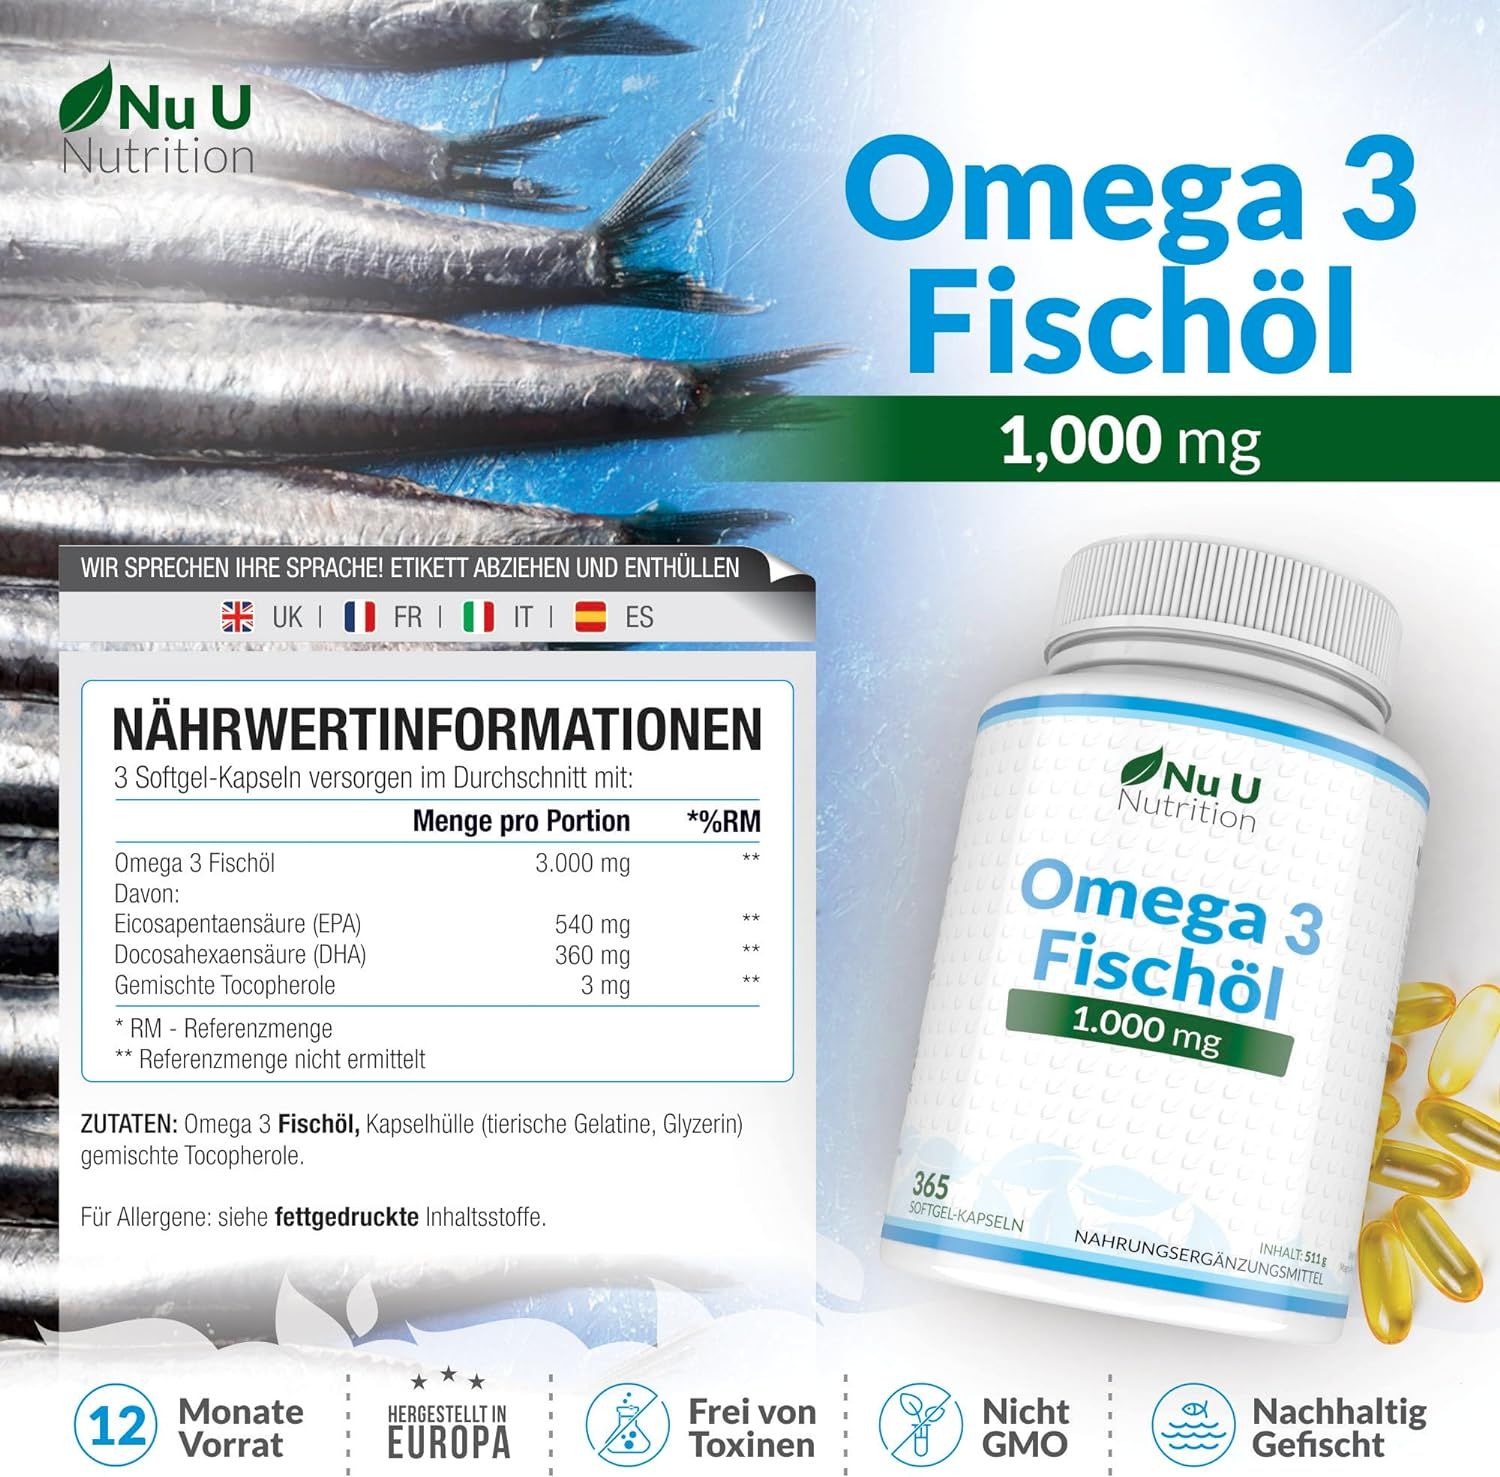 Nu U Nutrition Omega 3 Fischöl